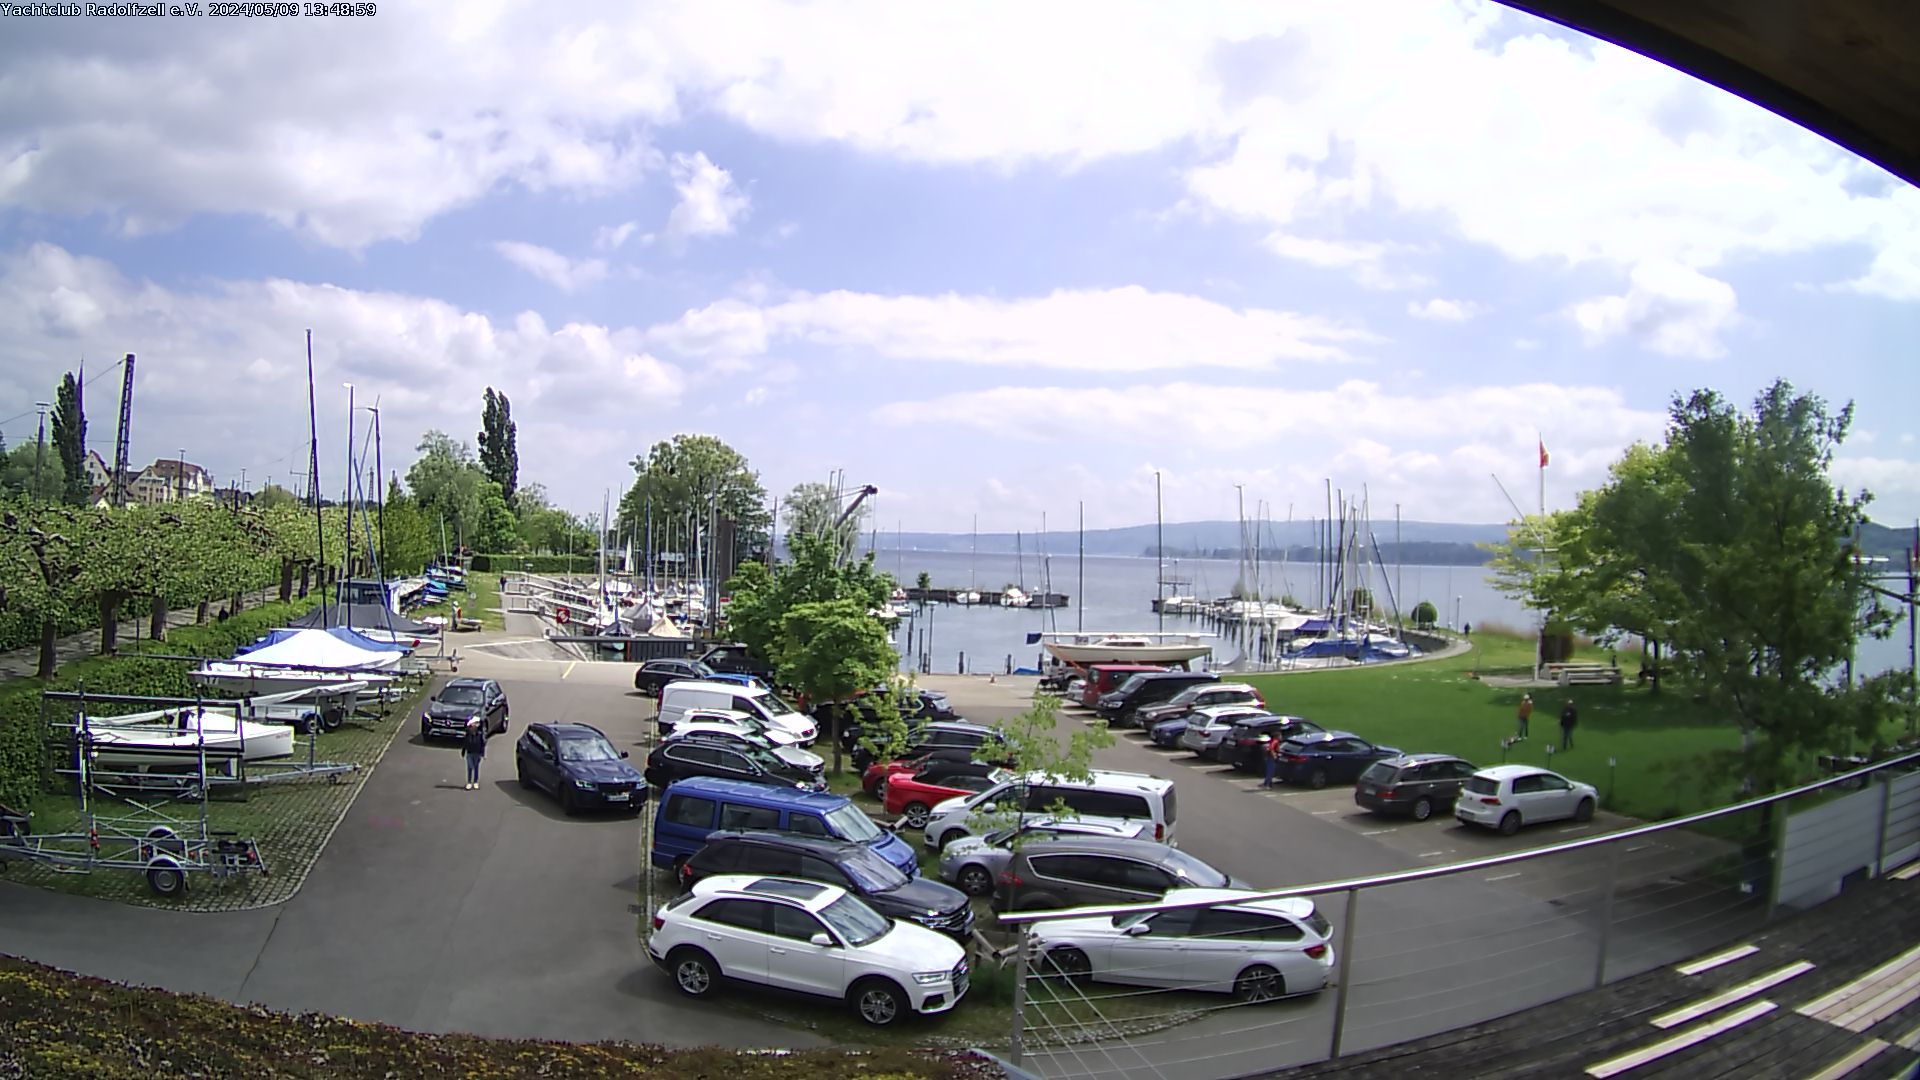 Yacht-Club Radolfzell am Bodensee